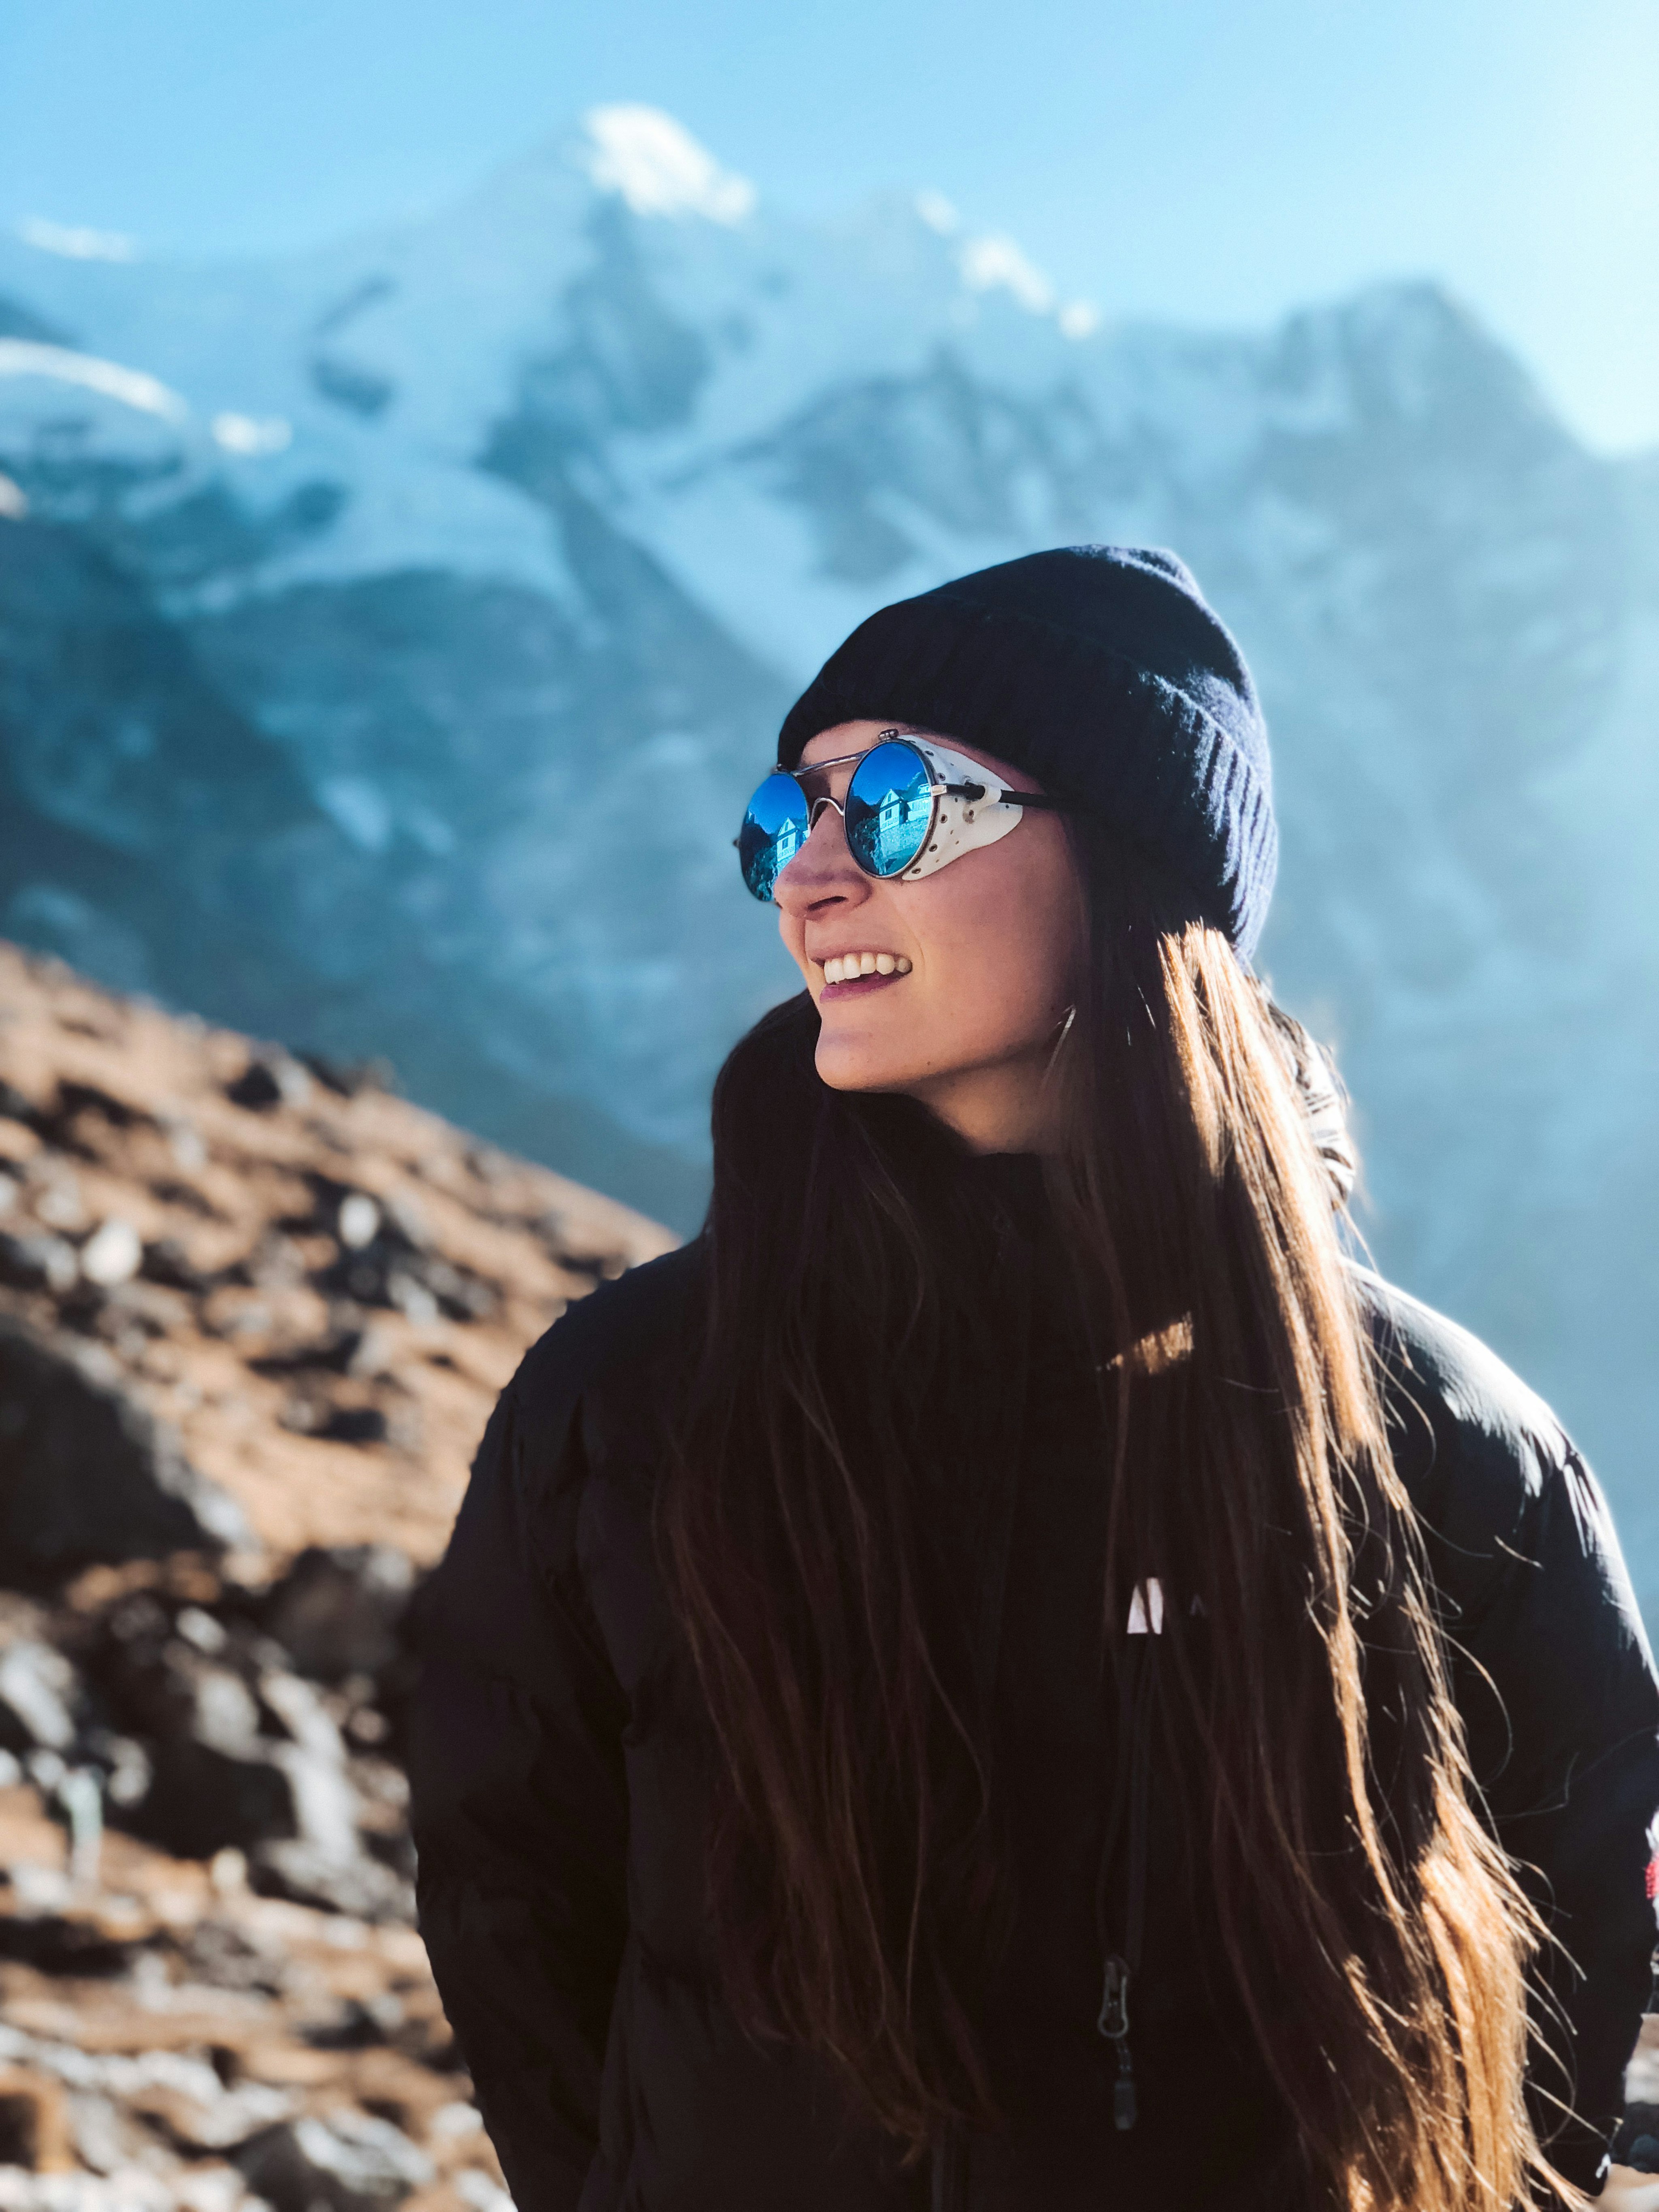 Jeune Femme Sur Des Lunettes De Ski Et Du Matériel De Snowboard à La  Montagne Faisant Des Activités